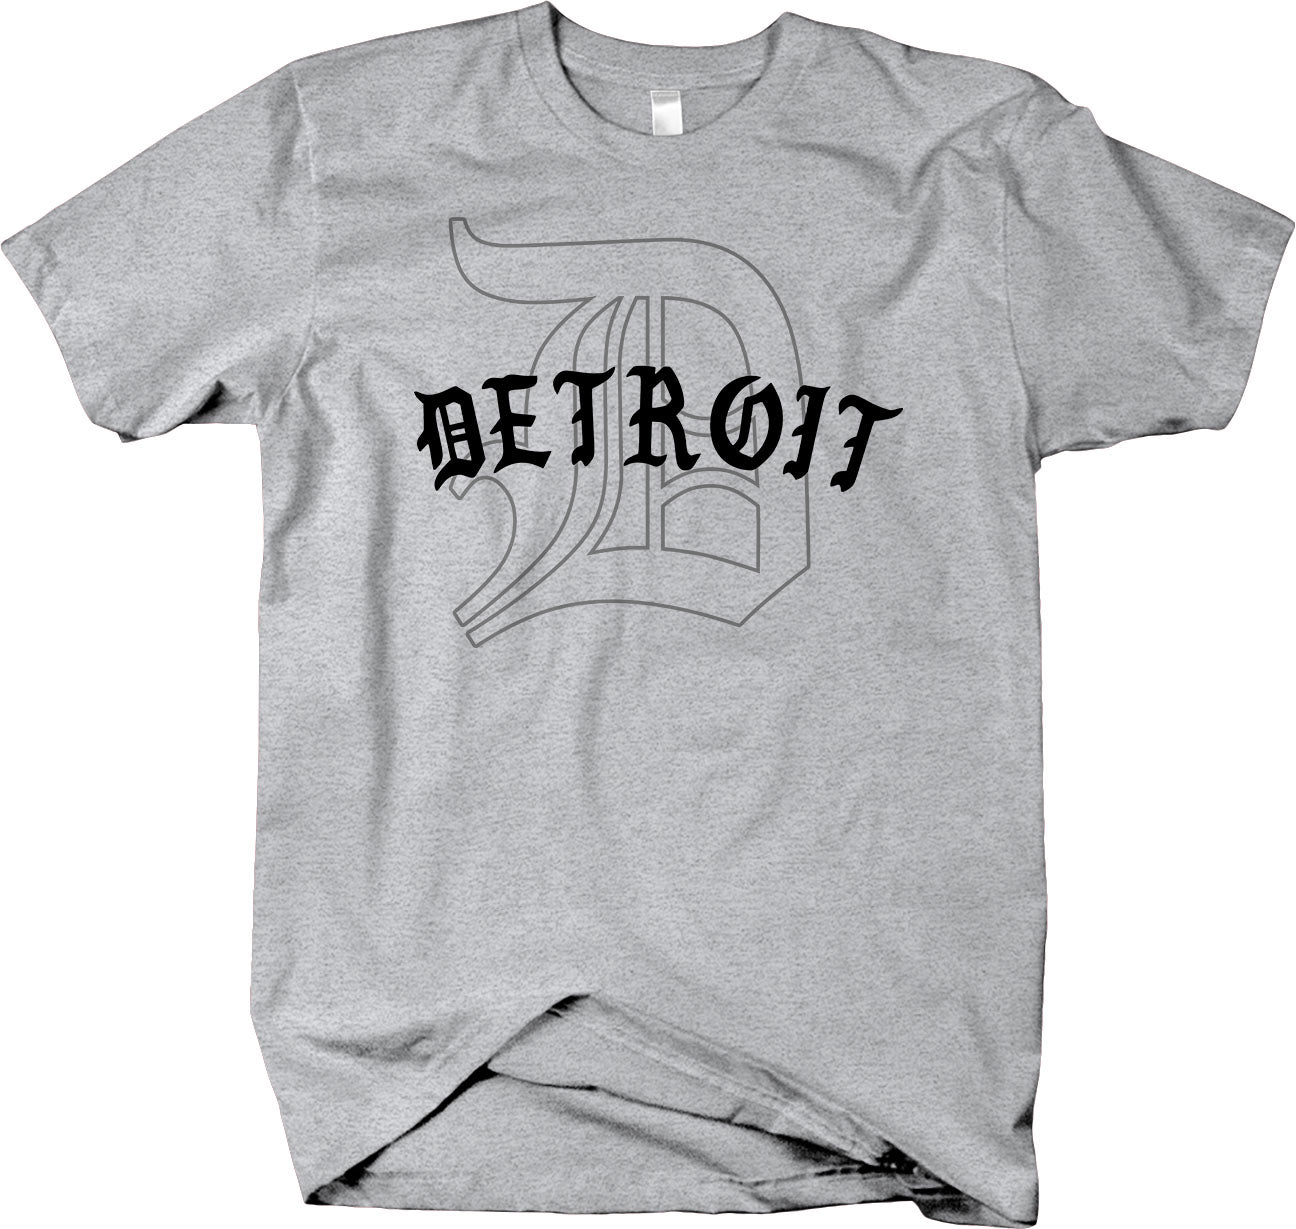 Classic "D" T-shirt  - Detroit Love Detroit Pride 313